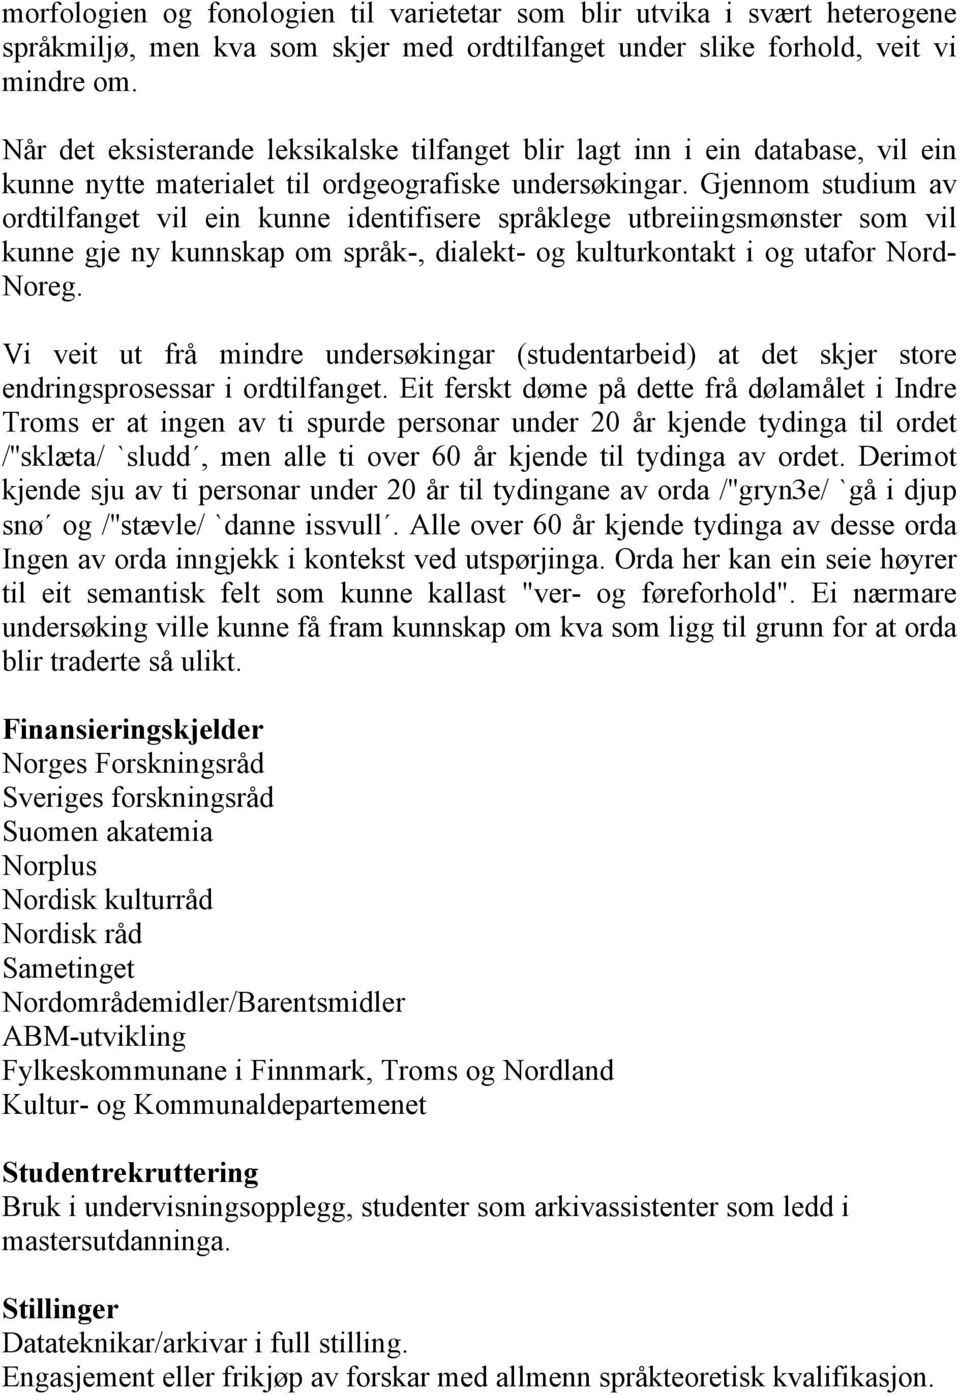 Gjennom studium av ordtilfanget vil ein kunne identifisere språklege utbreiingsmønster som vil kunne gje ny kunnskap om språk-, dialekt- og kulturkontakt i og utafor Nord- Noreg.